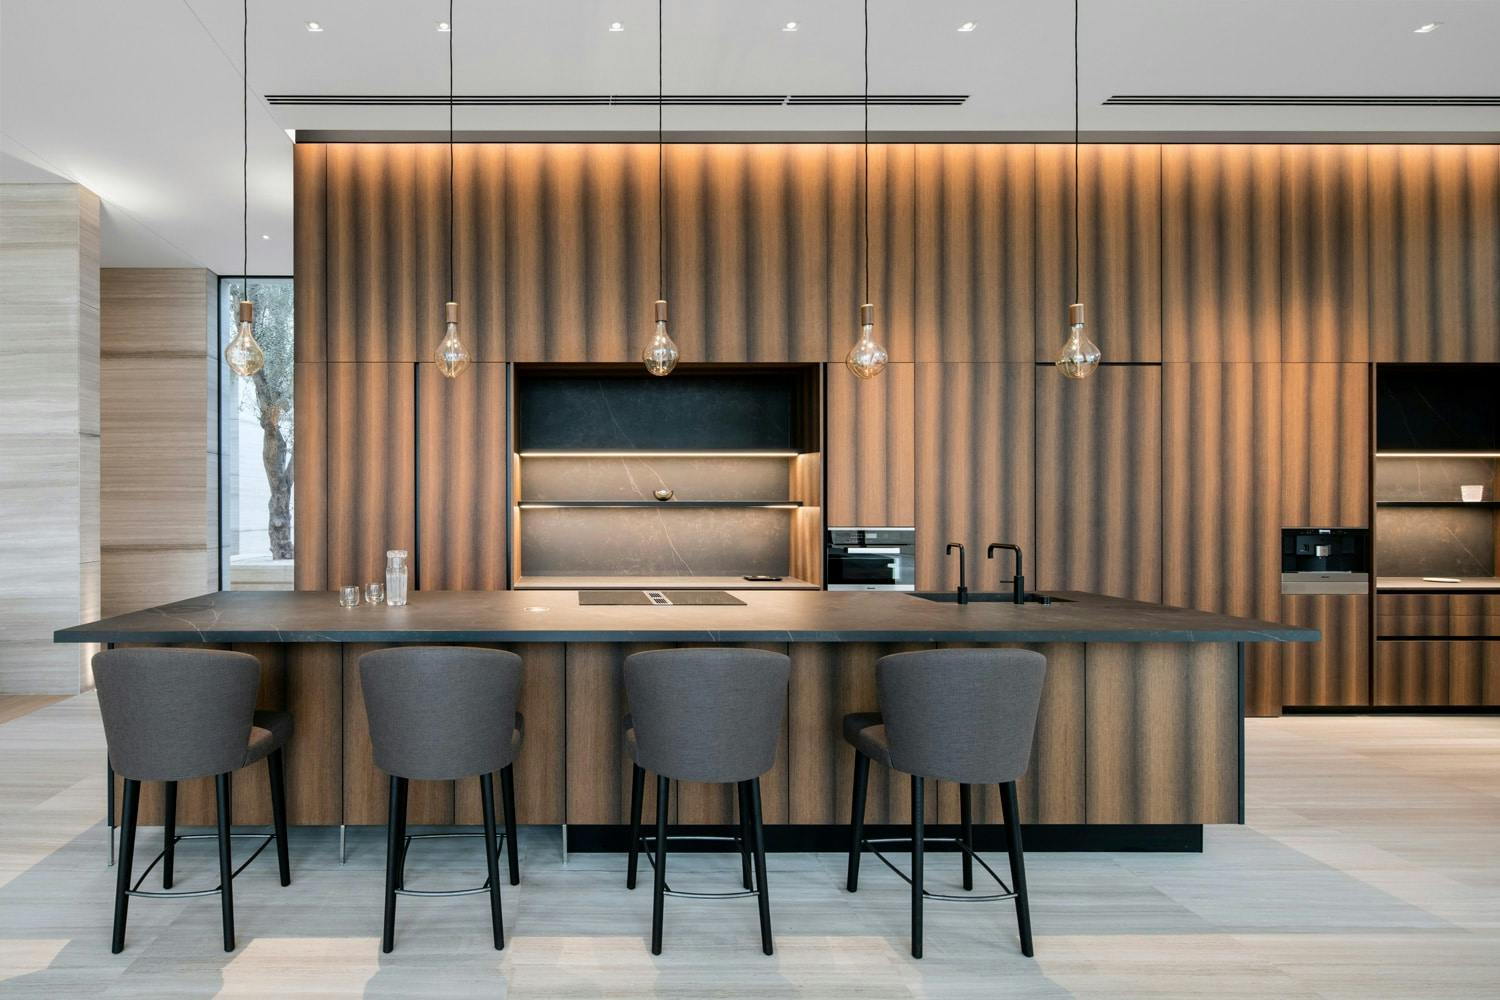 Bildnummer 59 des aktuellen Abschnitts von An award-winning interior design project finished with DKTN Kelya - Seite 2 von 4 von Cosentino Deutschland